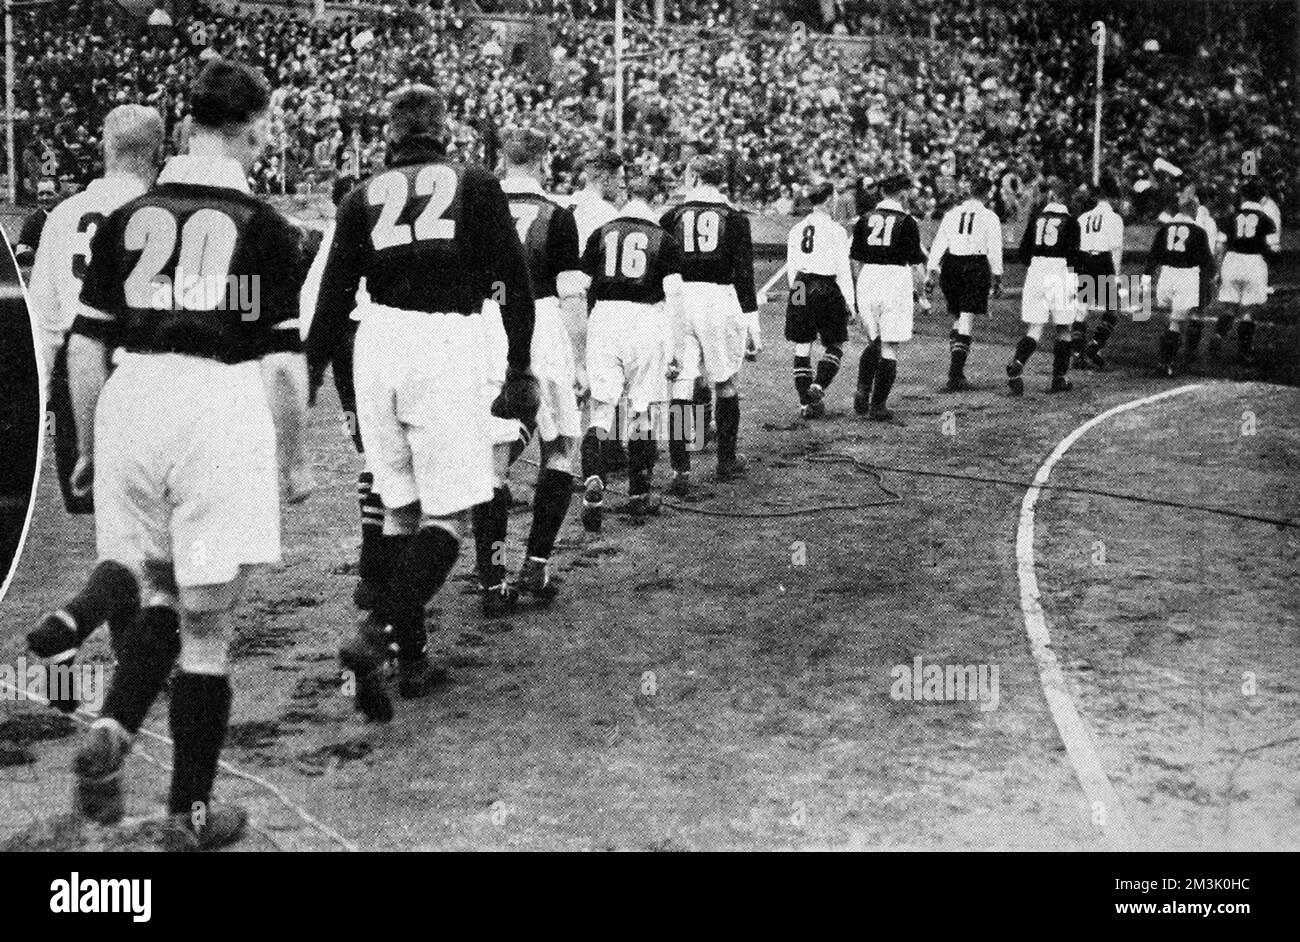 Les équipes d'Everton (chemises légères) et de Manchester City (chemises noires) se promo sur le terrain du stade Wembley, avant le début de la F.A. Coupe finale de 1933. Everton a gagné le jeu 1-0, grâce à un but de Dixie Dean. C'était l'une des premières fois que les footballeurs portaient des numéros au dos de leur chemise. La raison de cette innovation était d'aider les commentateurs de radio de la BBC et leurs auditeurs à suivre l'action. Comme on peut le voir, Everton a pris les numéros 1 à 11 et Manchester City a pris 12 à 22. Date: 1933 Banque D'Images